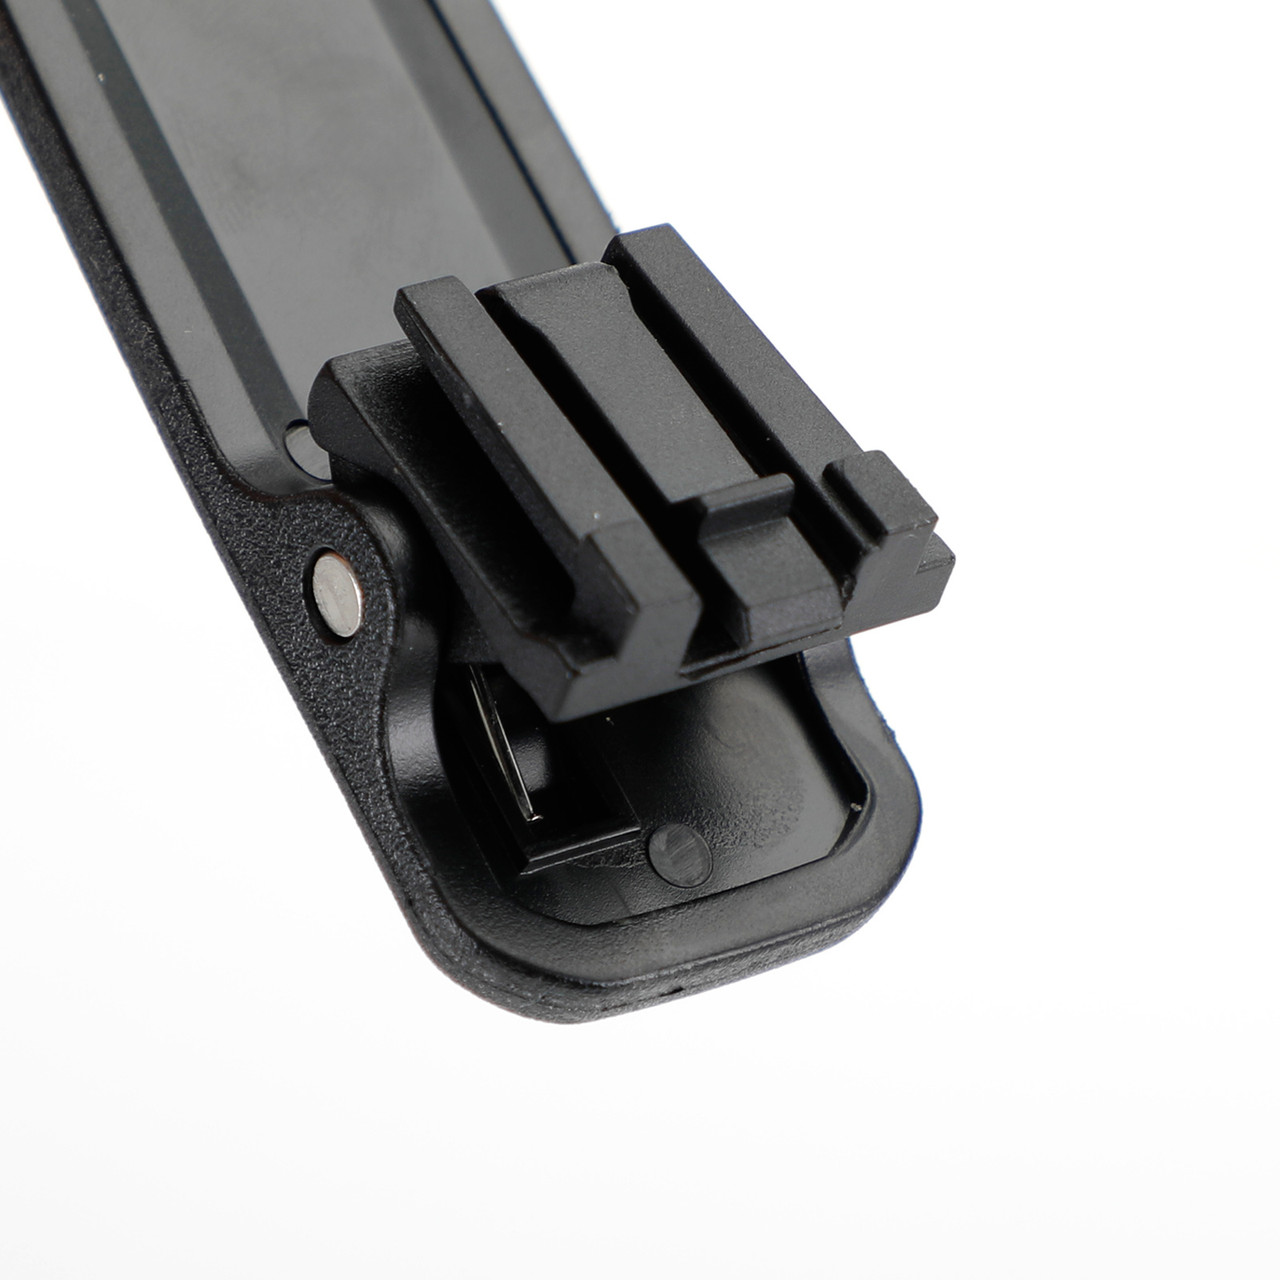 5X Back Pocket Clip Belt Clip Fit For ICOM IC-V88 IC-U88 IC-F1000 Walkie Talkie